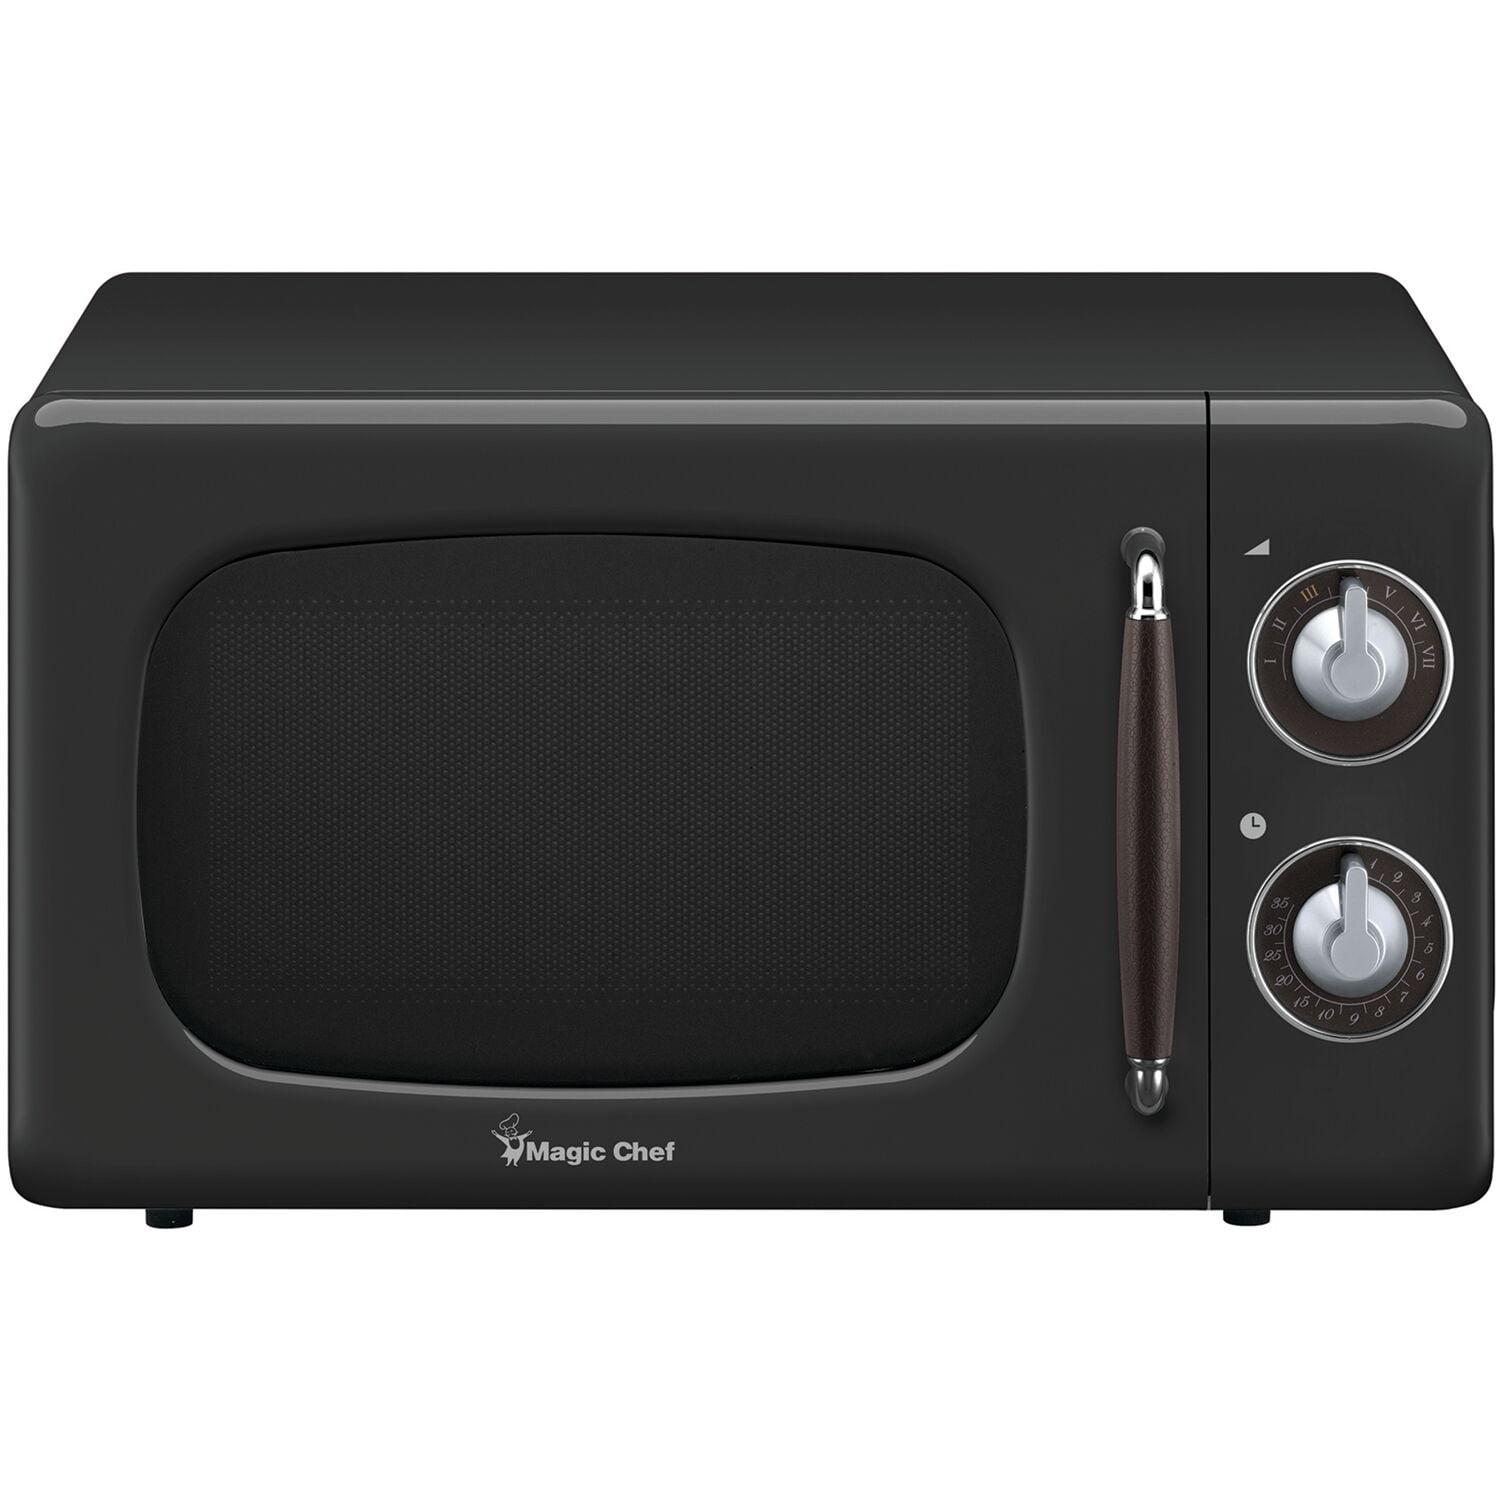 Magic Chef 0.7-Cu. Ft. 700W Retro Countertop Microwave Oven in Black